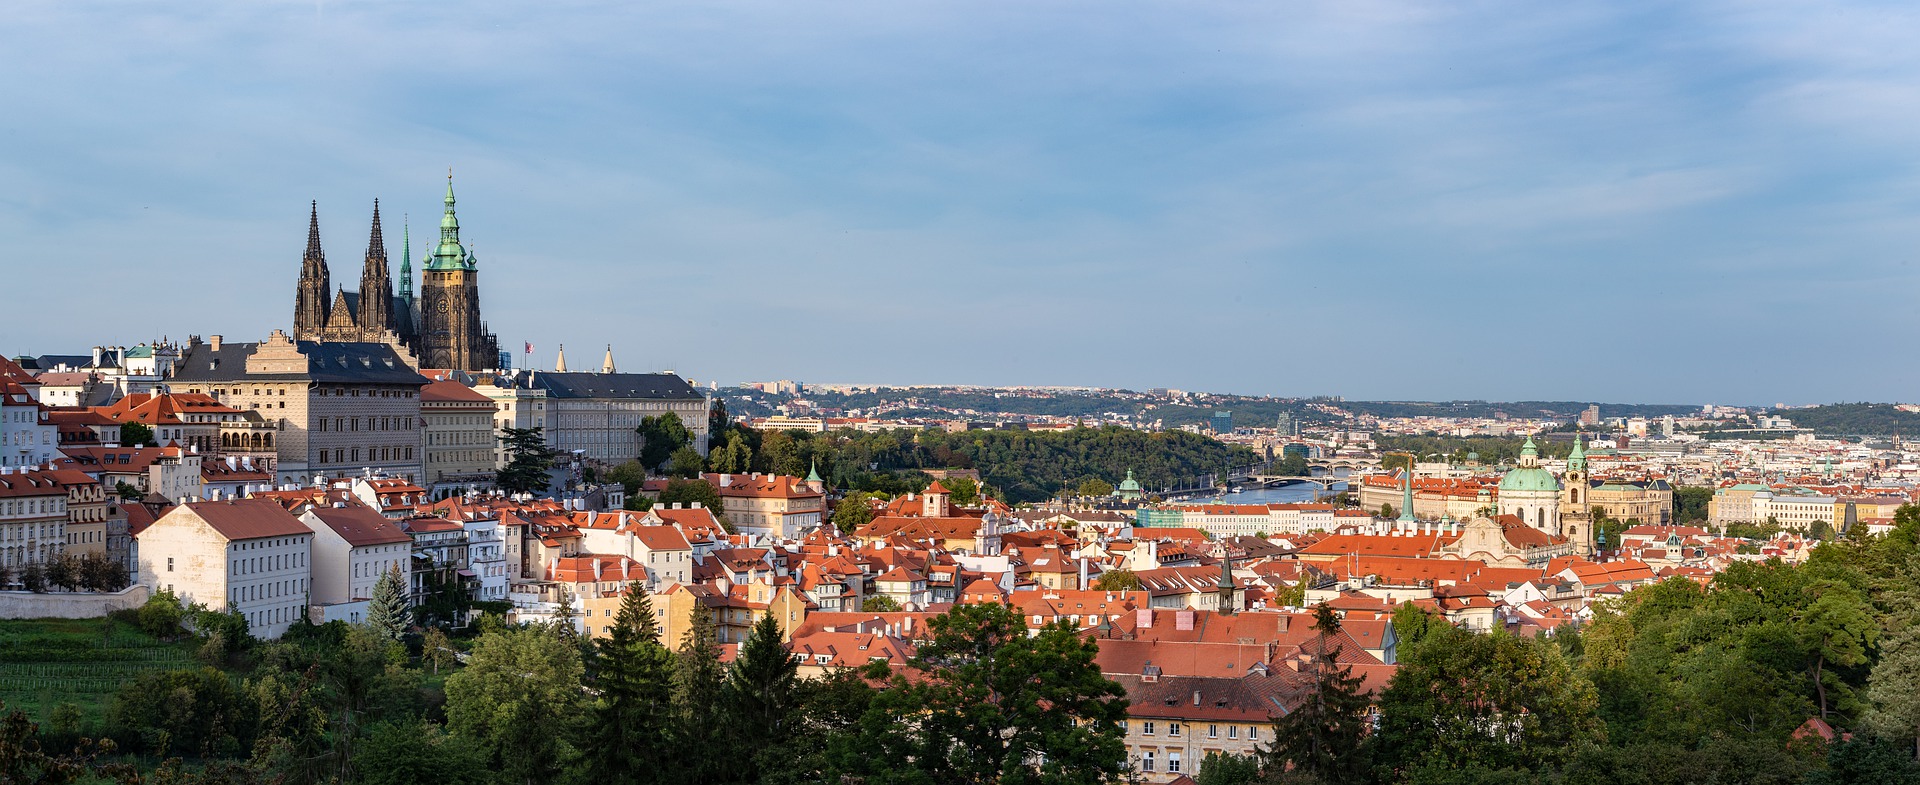 Slottet i Prag